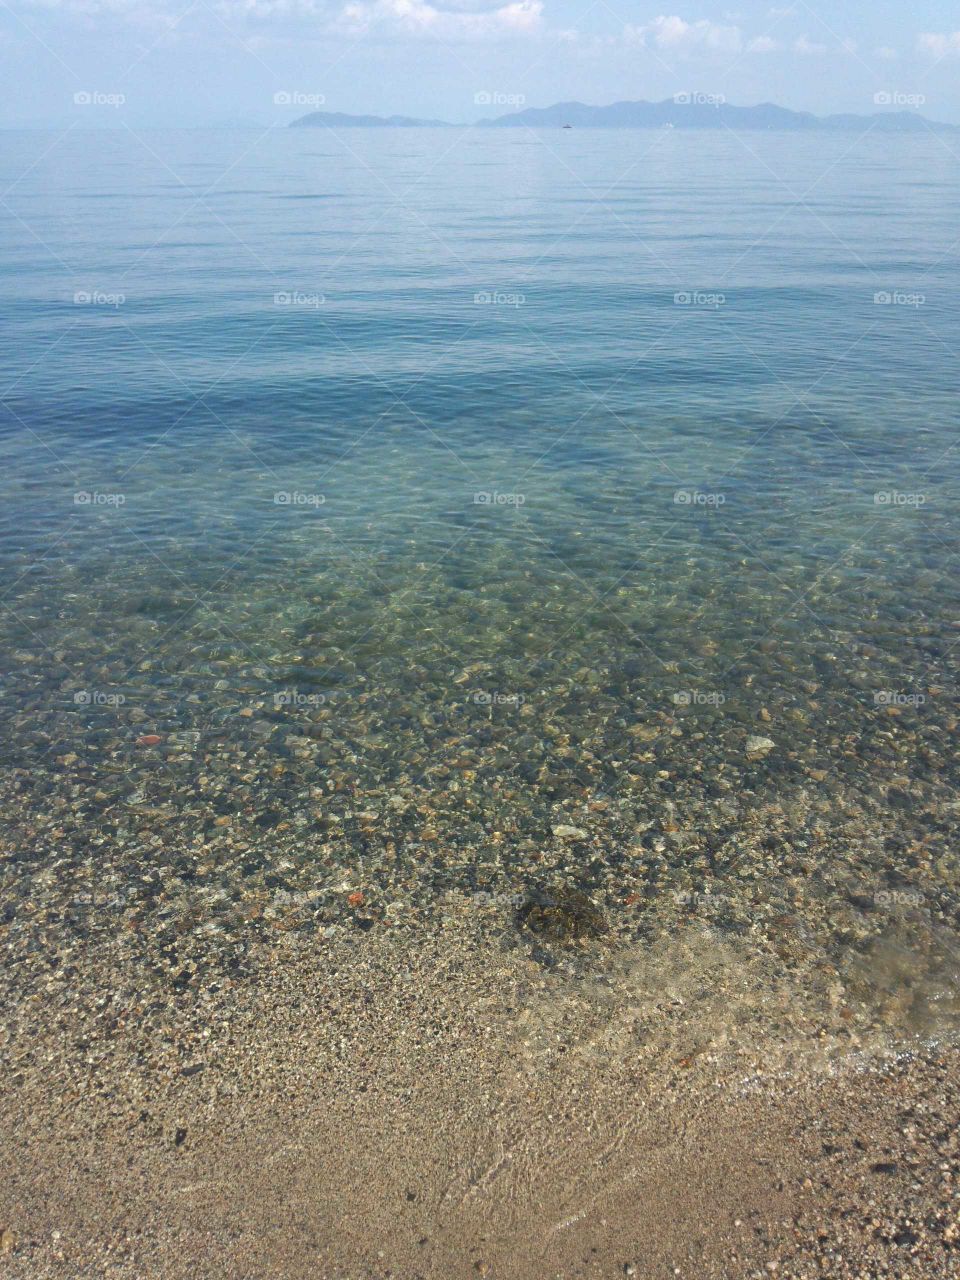 my favorite spot,lake Biwa